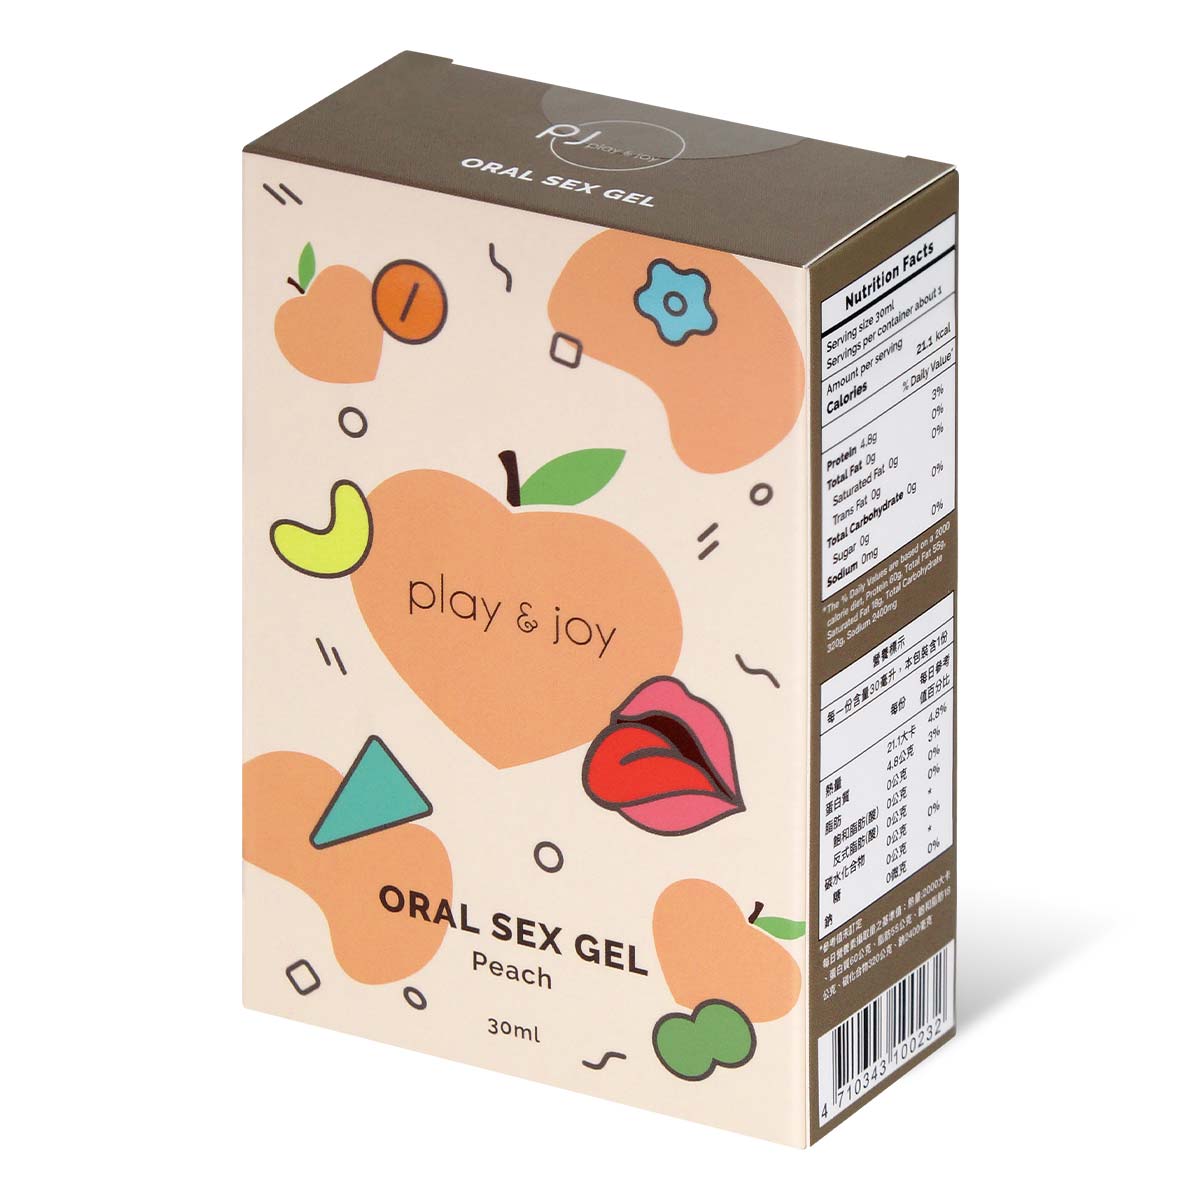 PLAY & JOY ORAL SEX GEL 30ml (Peach Flavour)-p_1